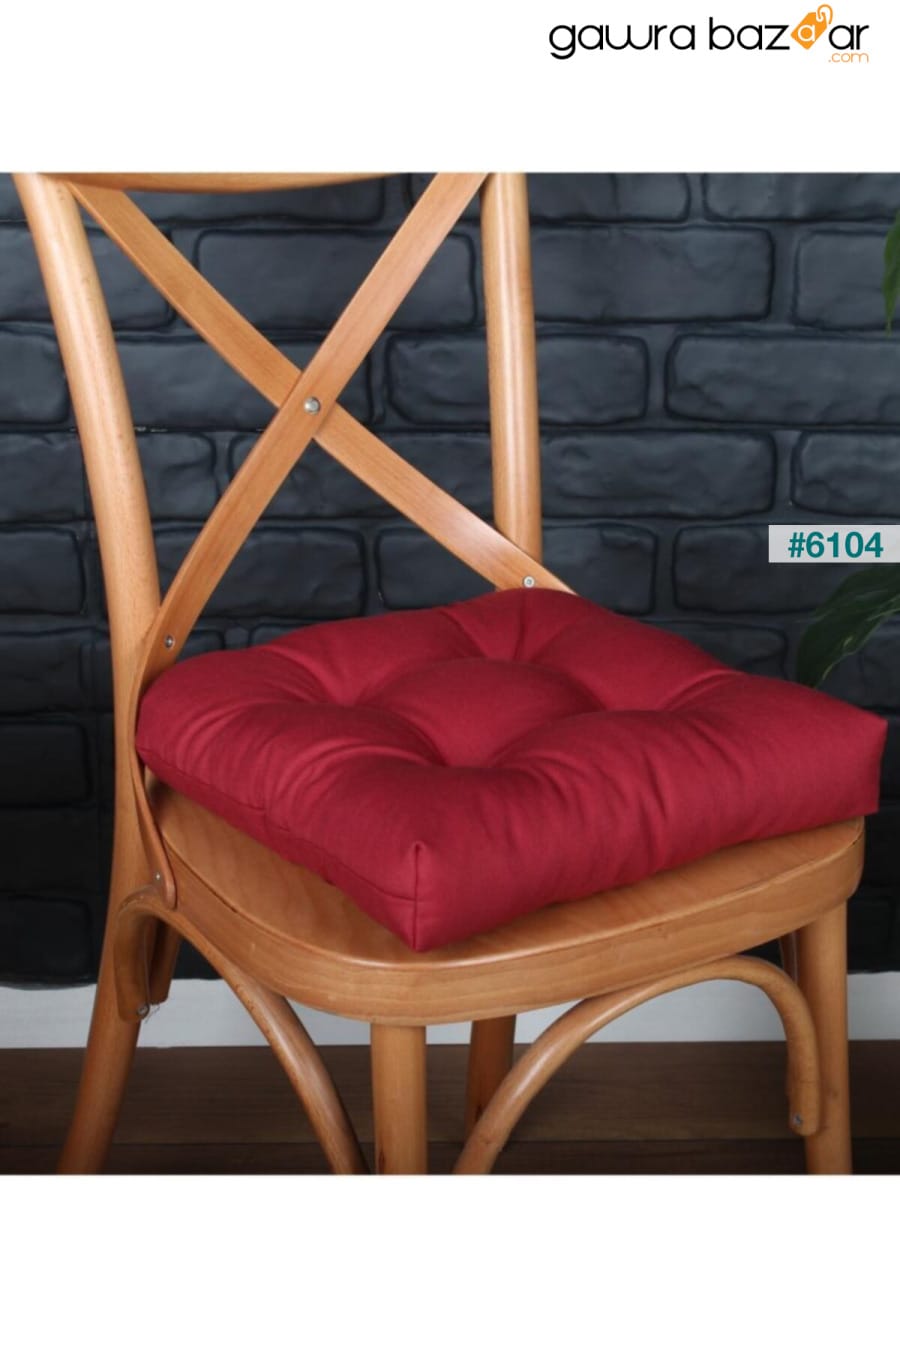 وسادة كرسي لوكس Pofidik باللون الأحمر الكلاريت بغرز خاصة 40x40 سم ALTINPAMUK 1